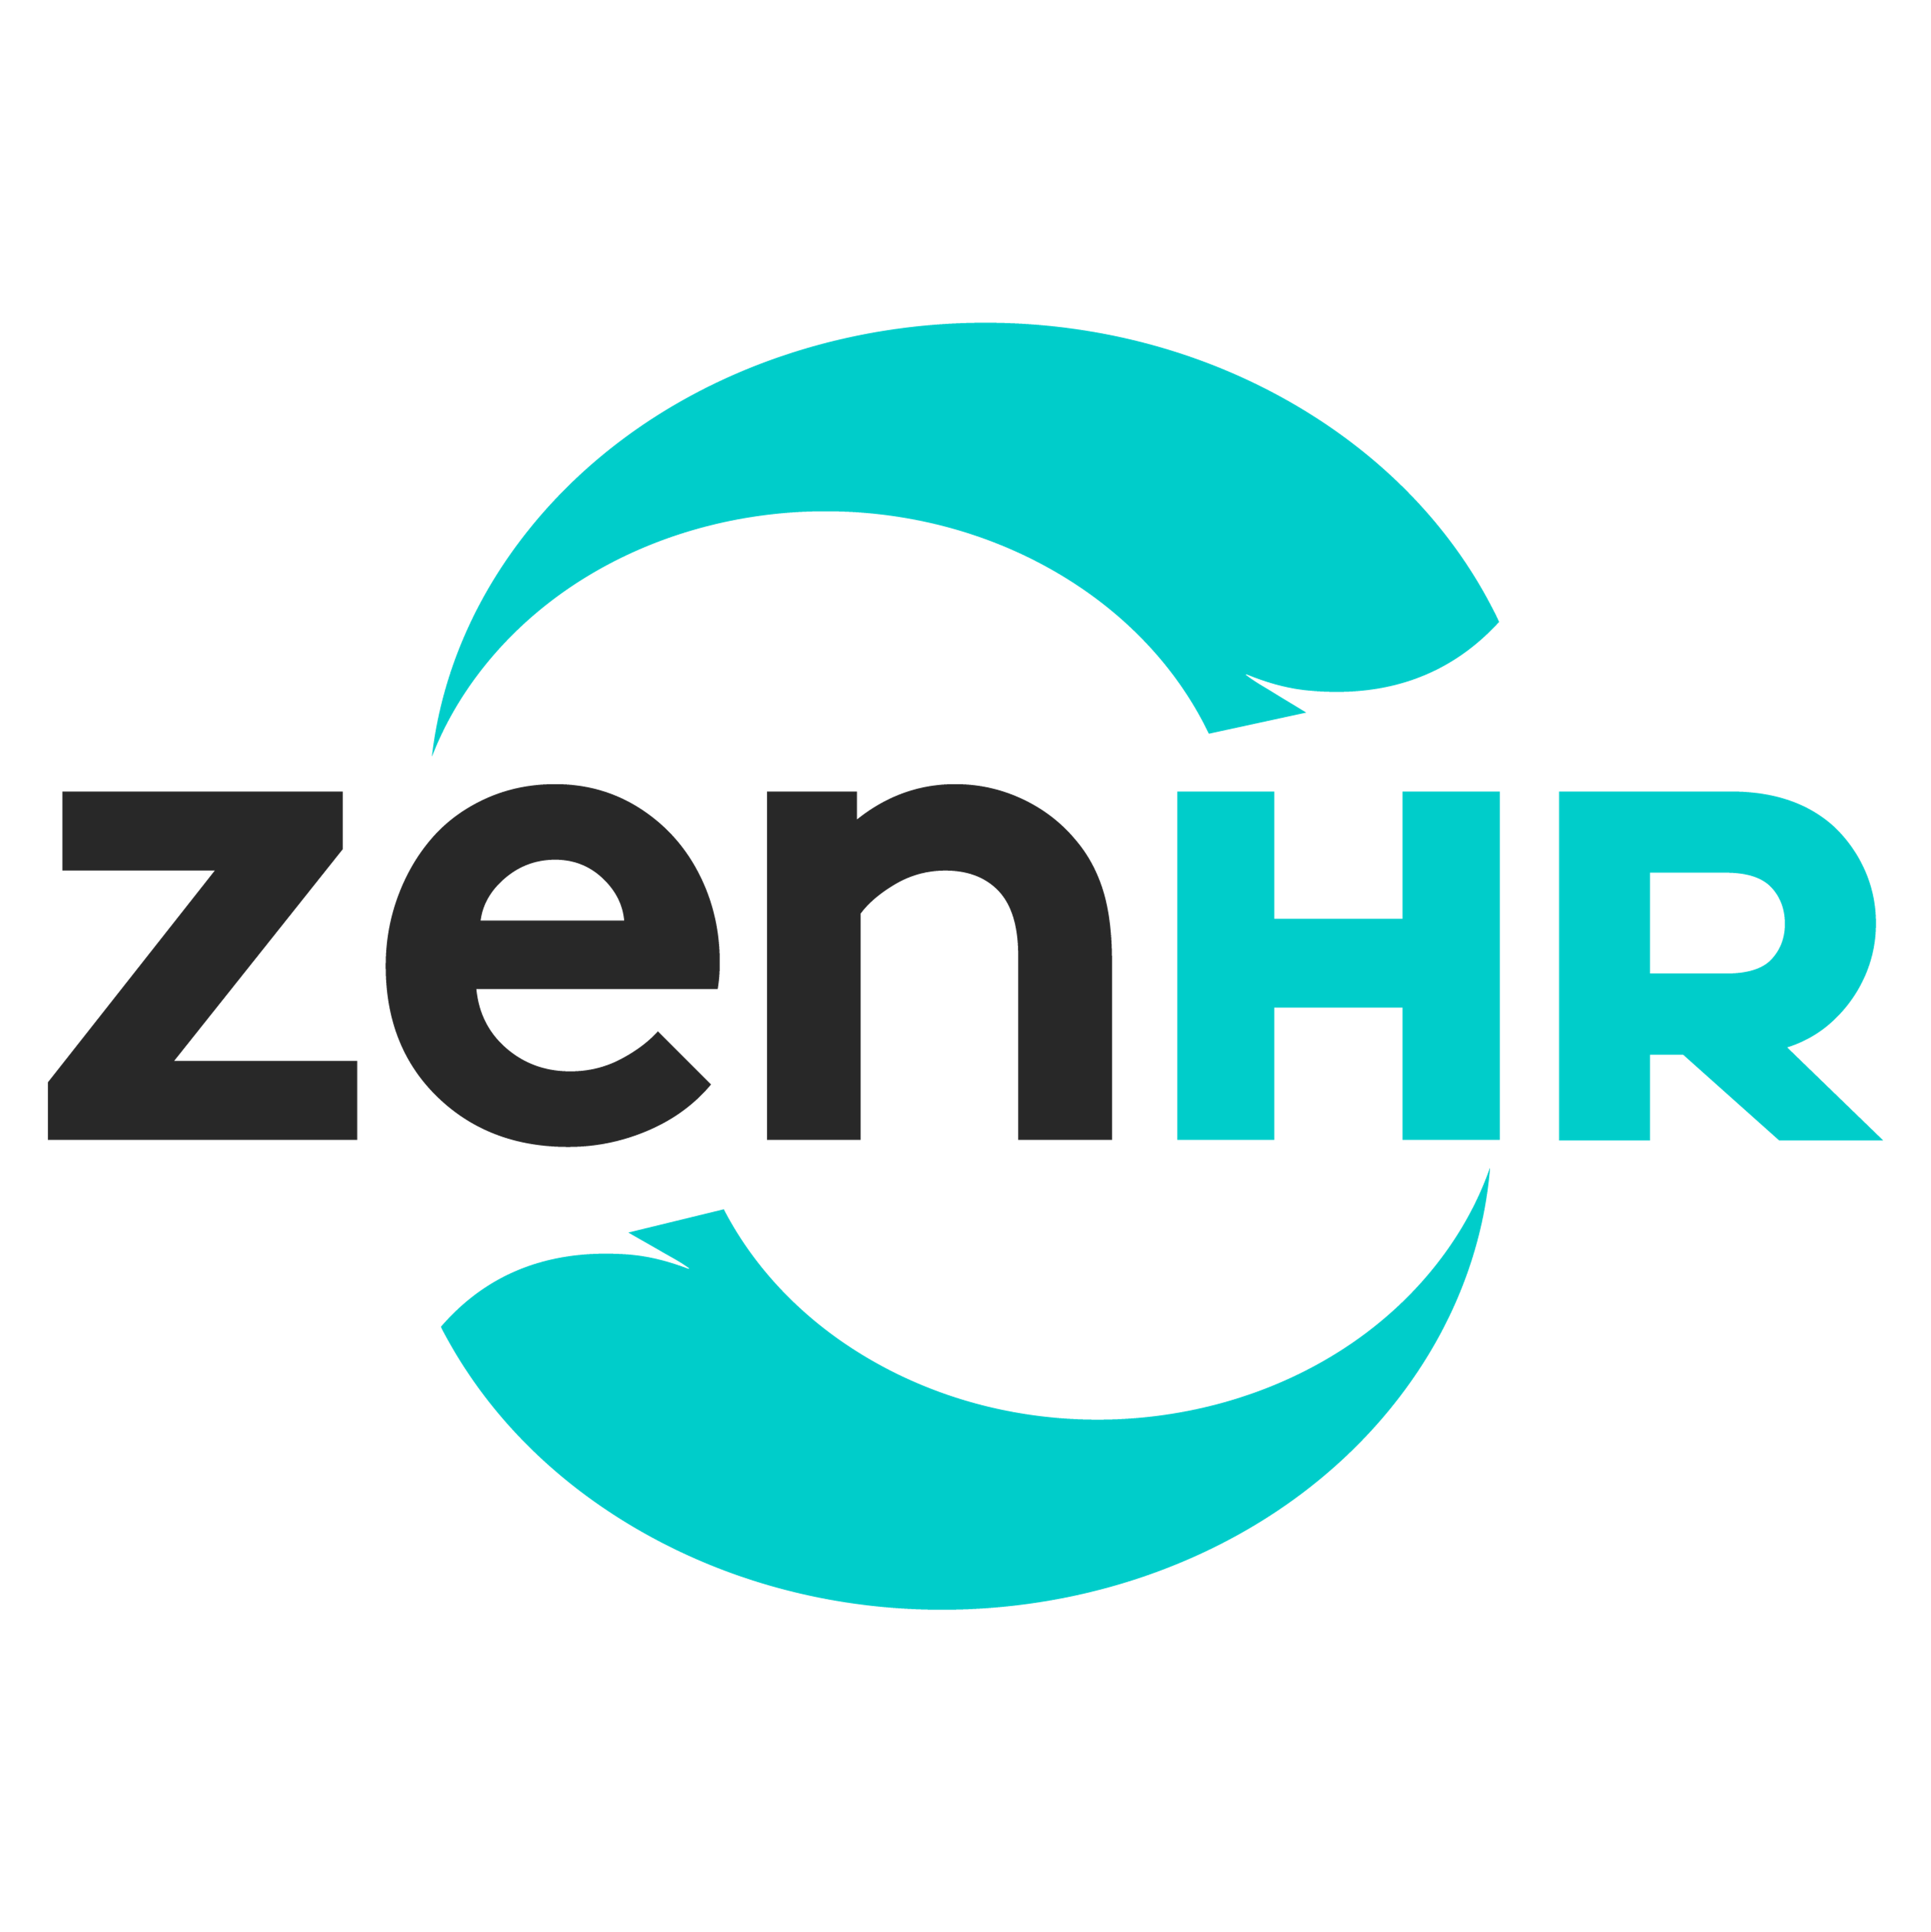 ZenHR Logo